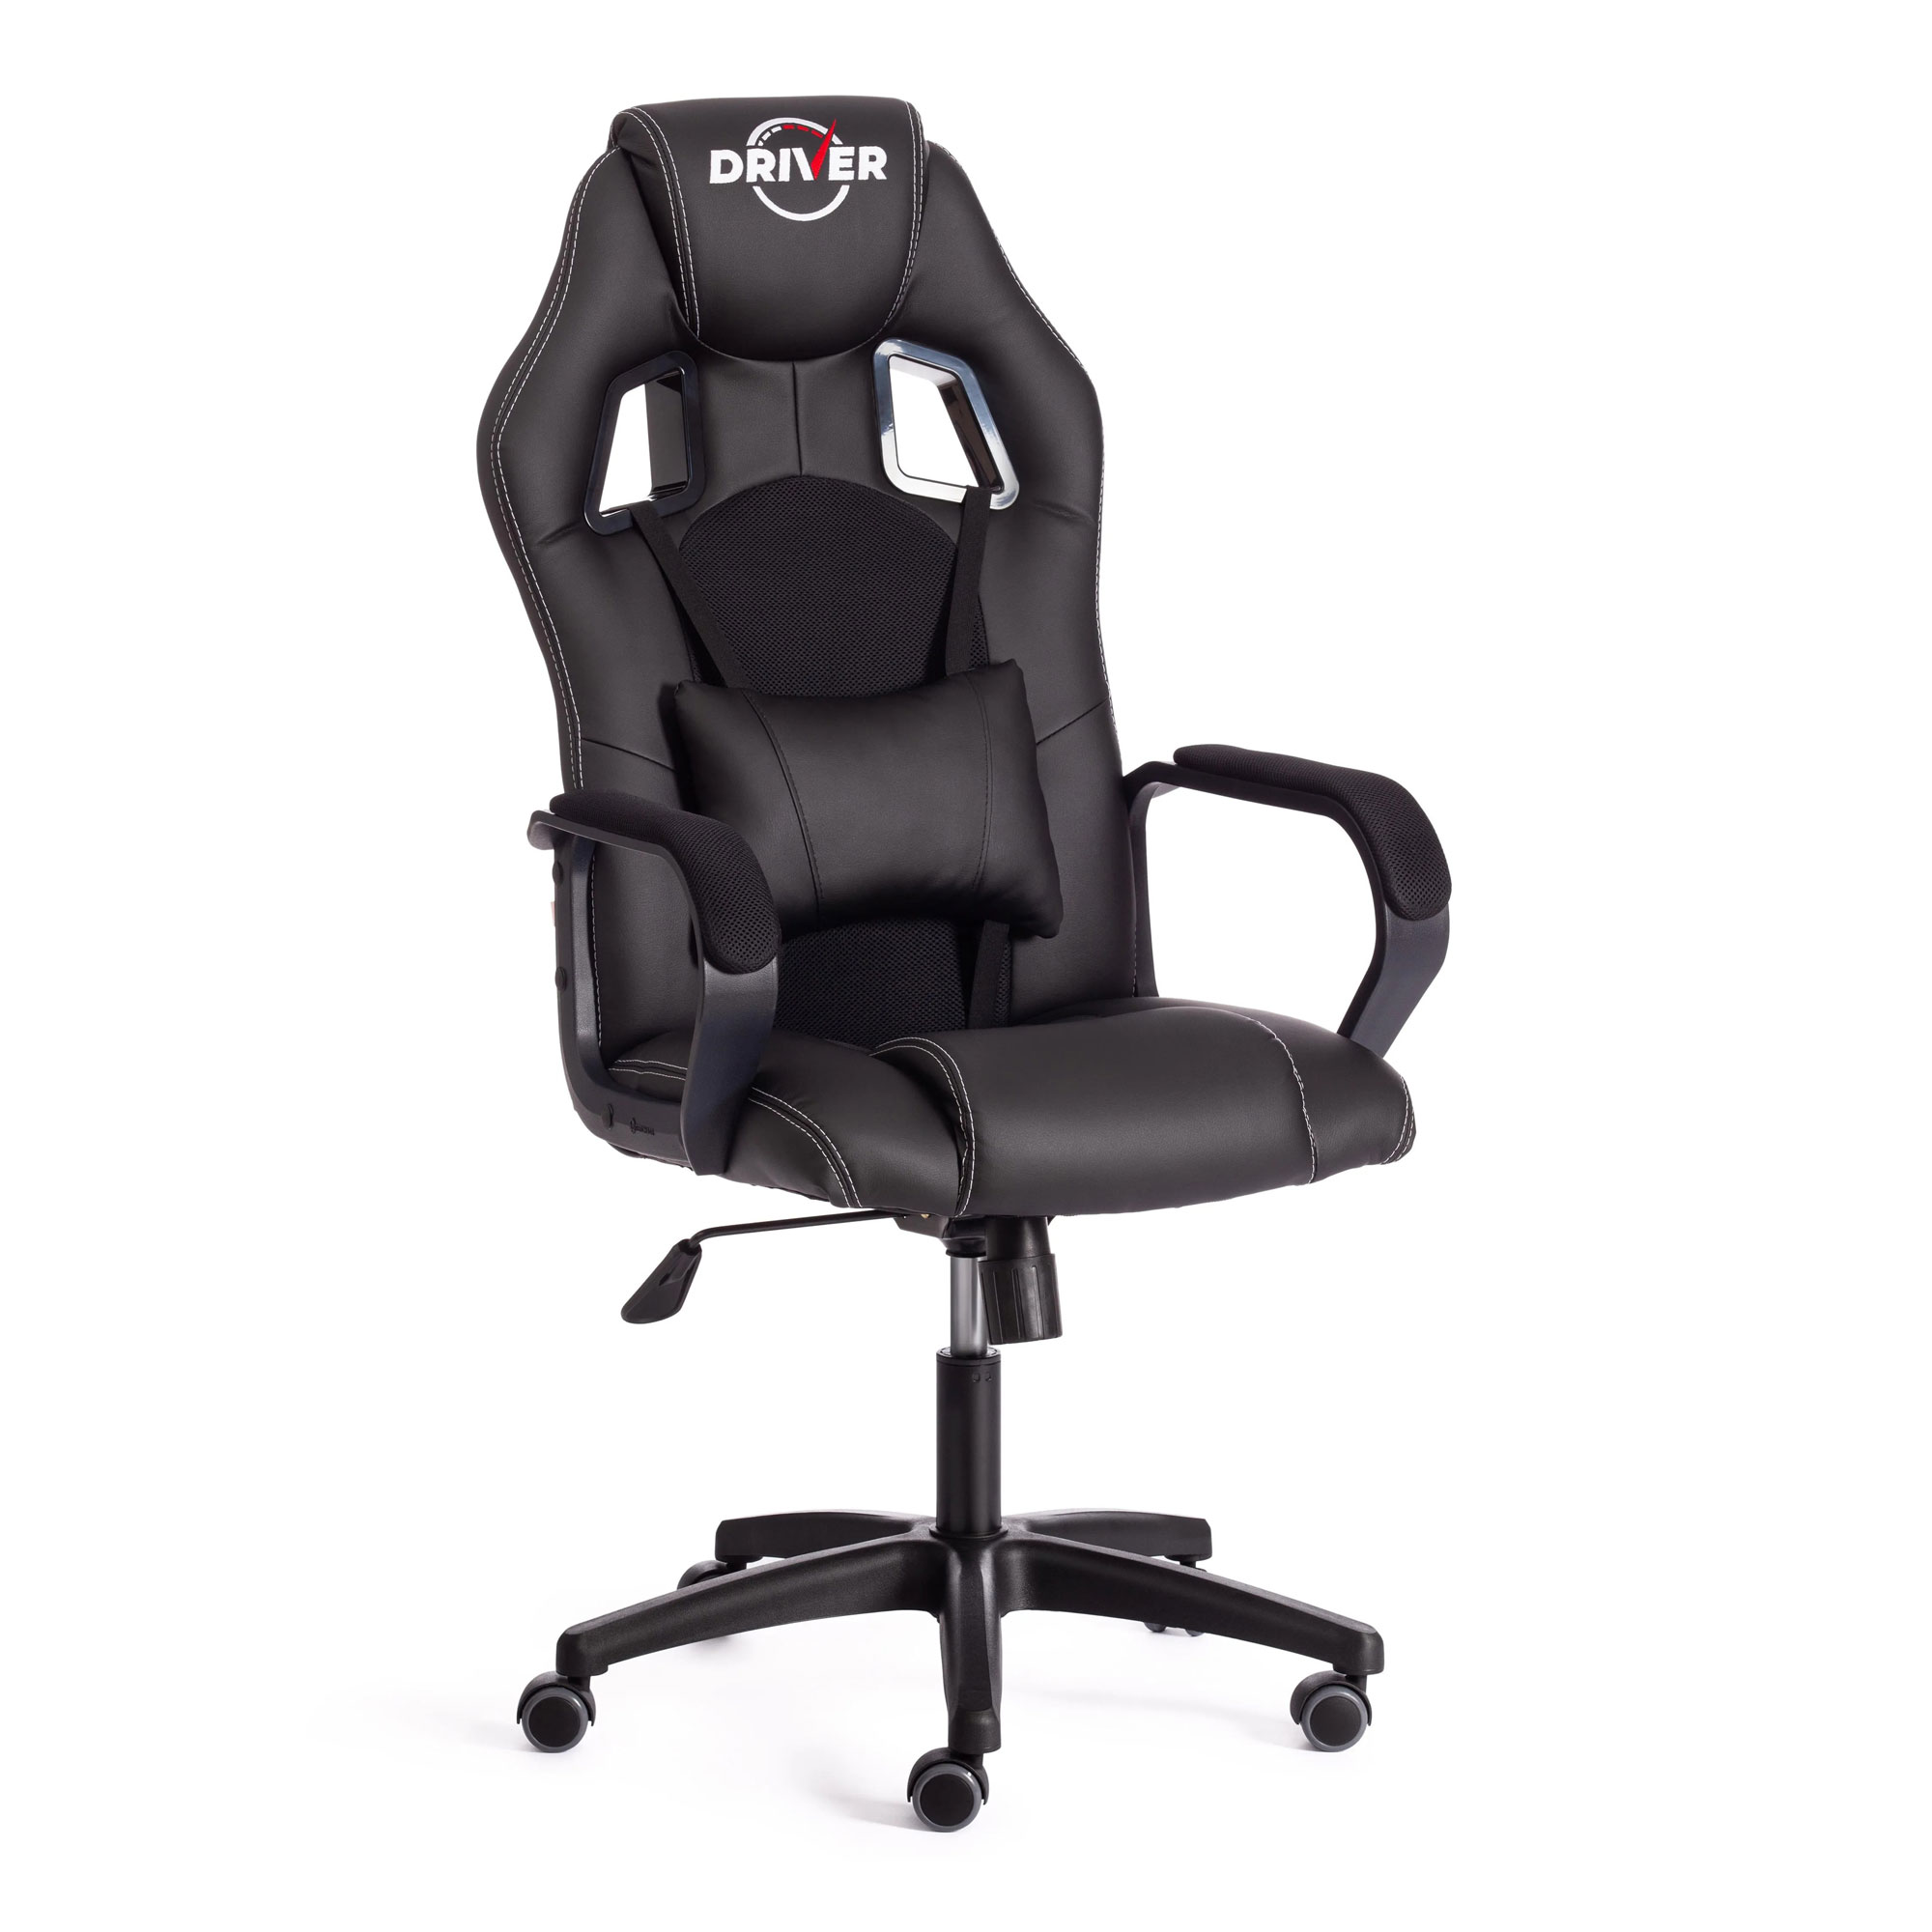 Кресло компьютерное TC Driver искусственная кожа чёрное 55х49х126 см кресло компьютерное tc neo искусственная кожа чёрное с красным 64х49х122 см